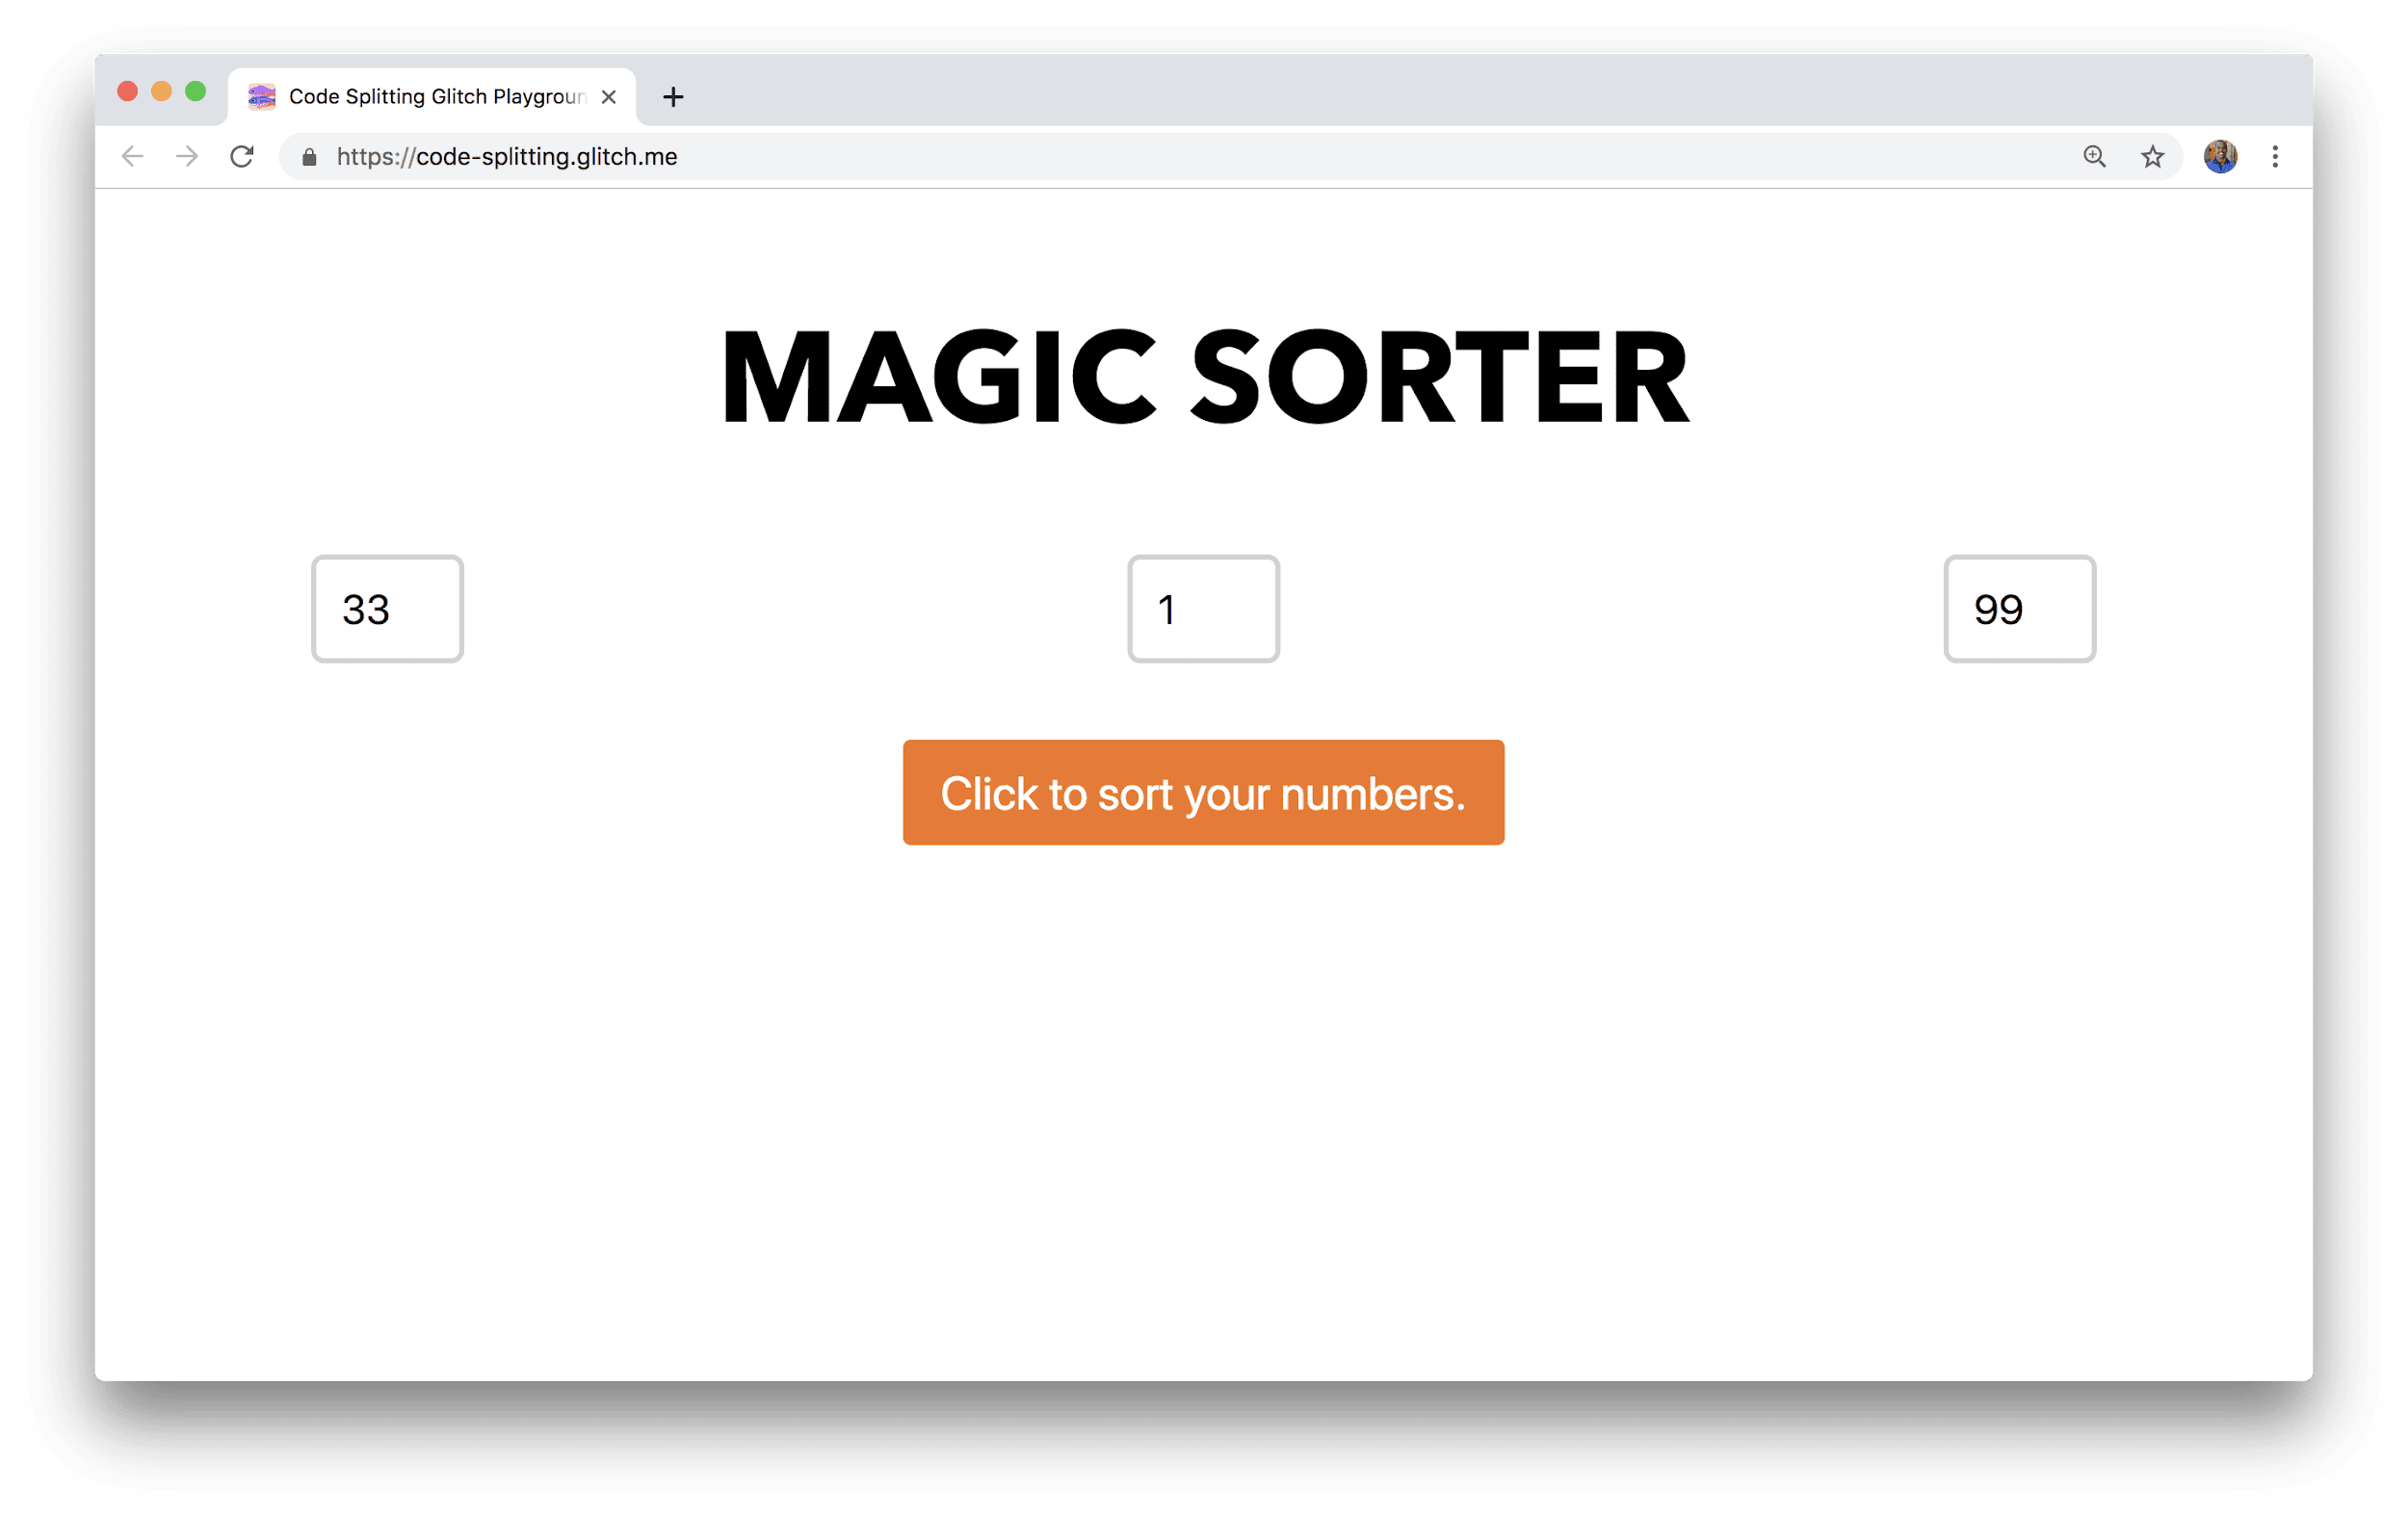 W oknie przeglądarki wyświetla się aplikacja o nazwie Magiczny sorter, z 3 polami do wpisywania liczb i przyciskiem sortowania.